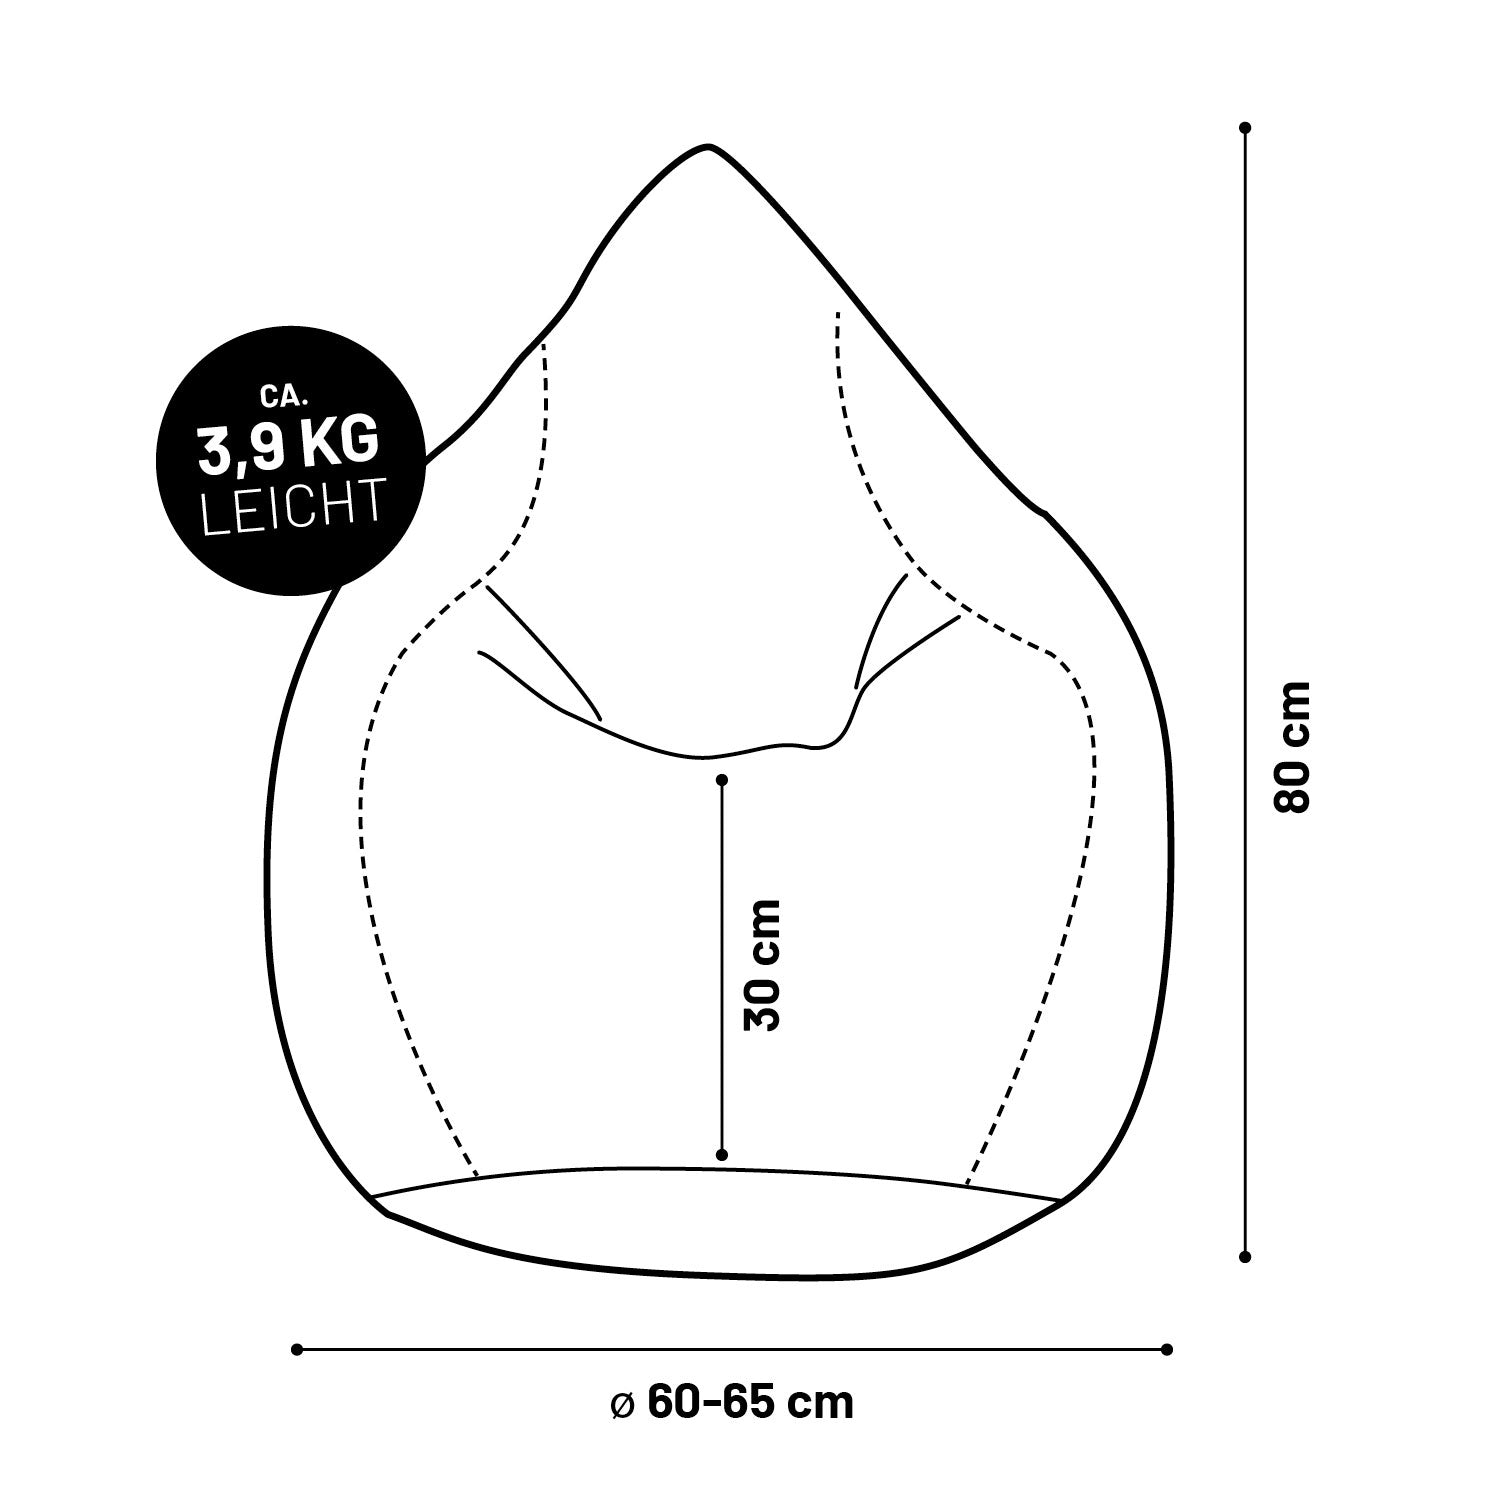 Luxury XL PLUS Sitzsack stylischer Beanbag - 220L Füllung mit extra starken Nähten - Schwarz